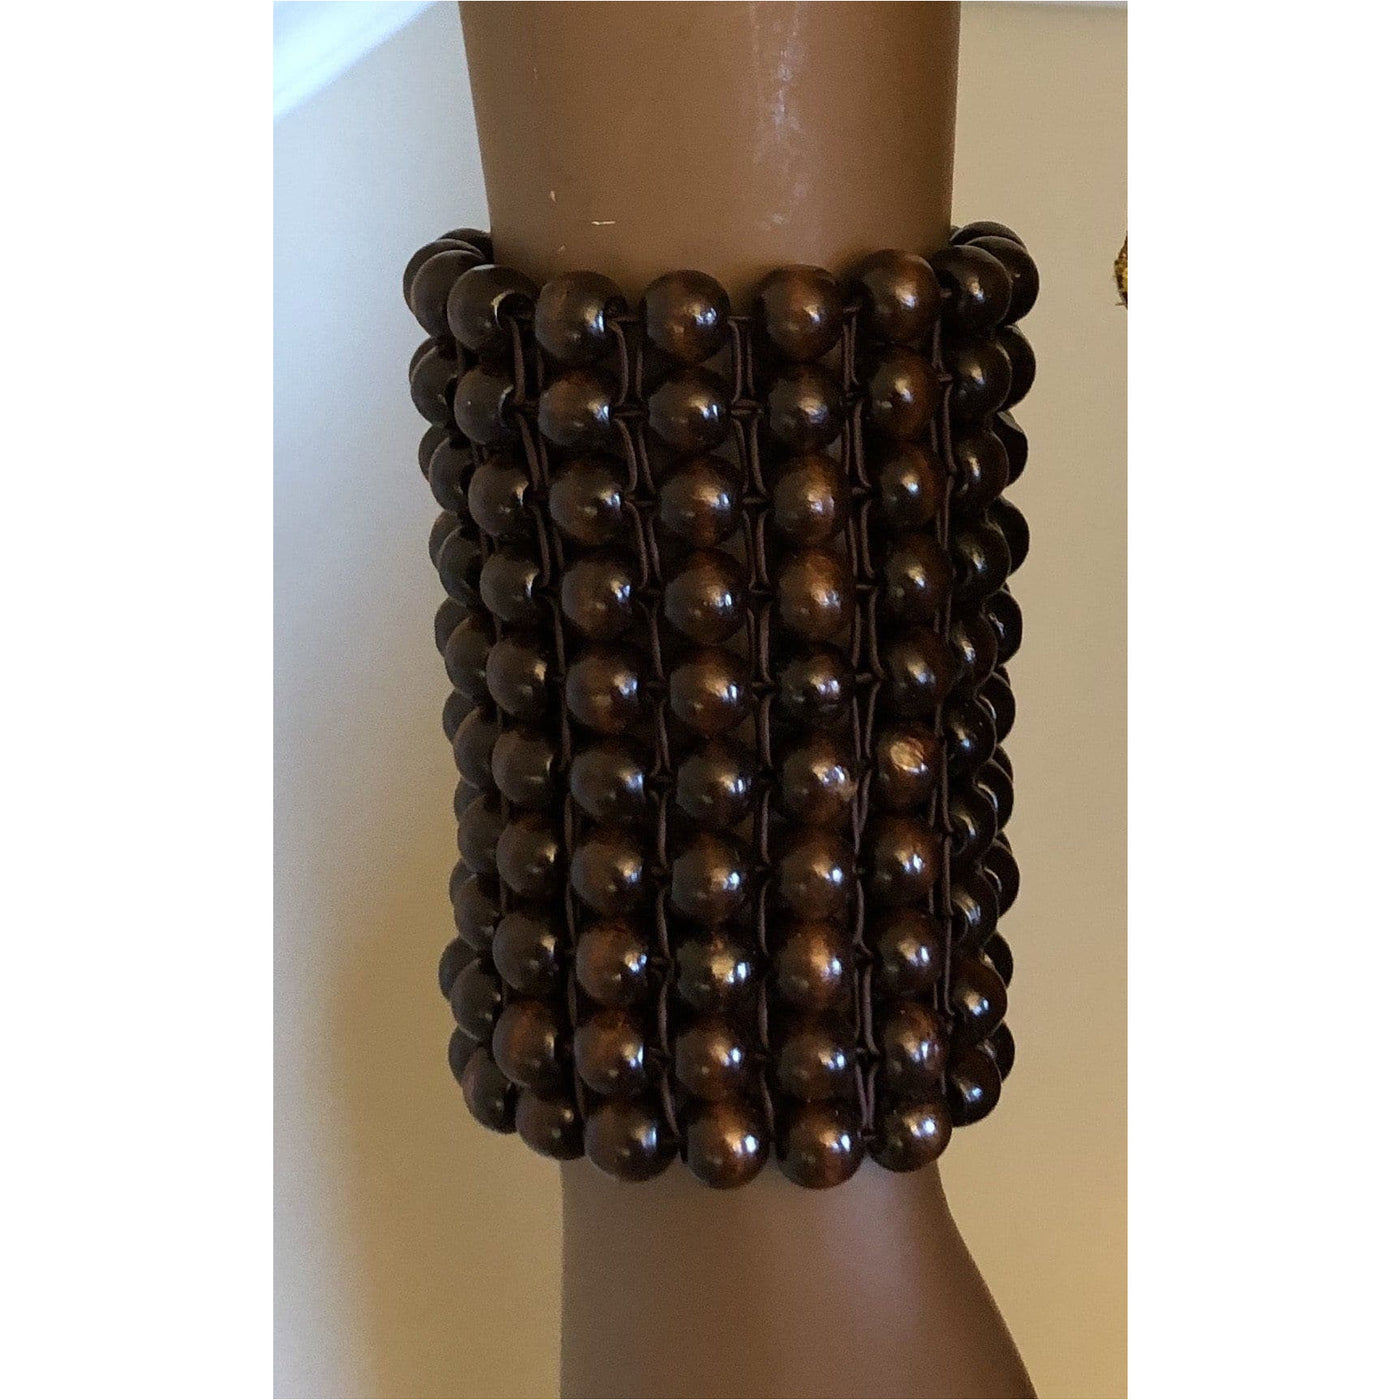 Obaahemaa Janet beaded bracelets/ cuffs - Trufacebygrace